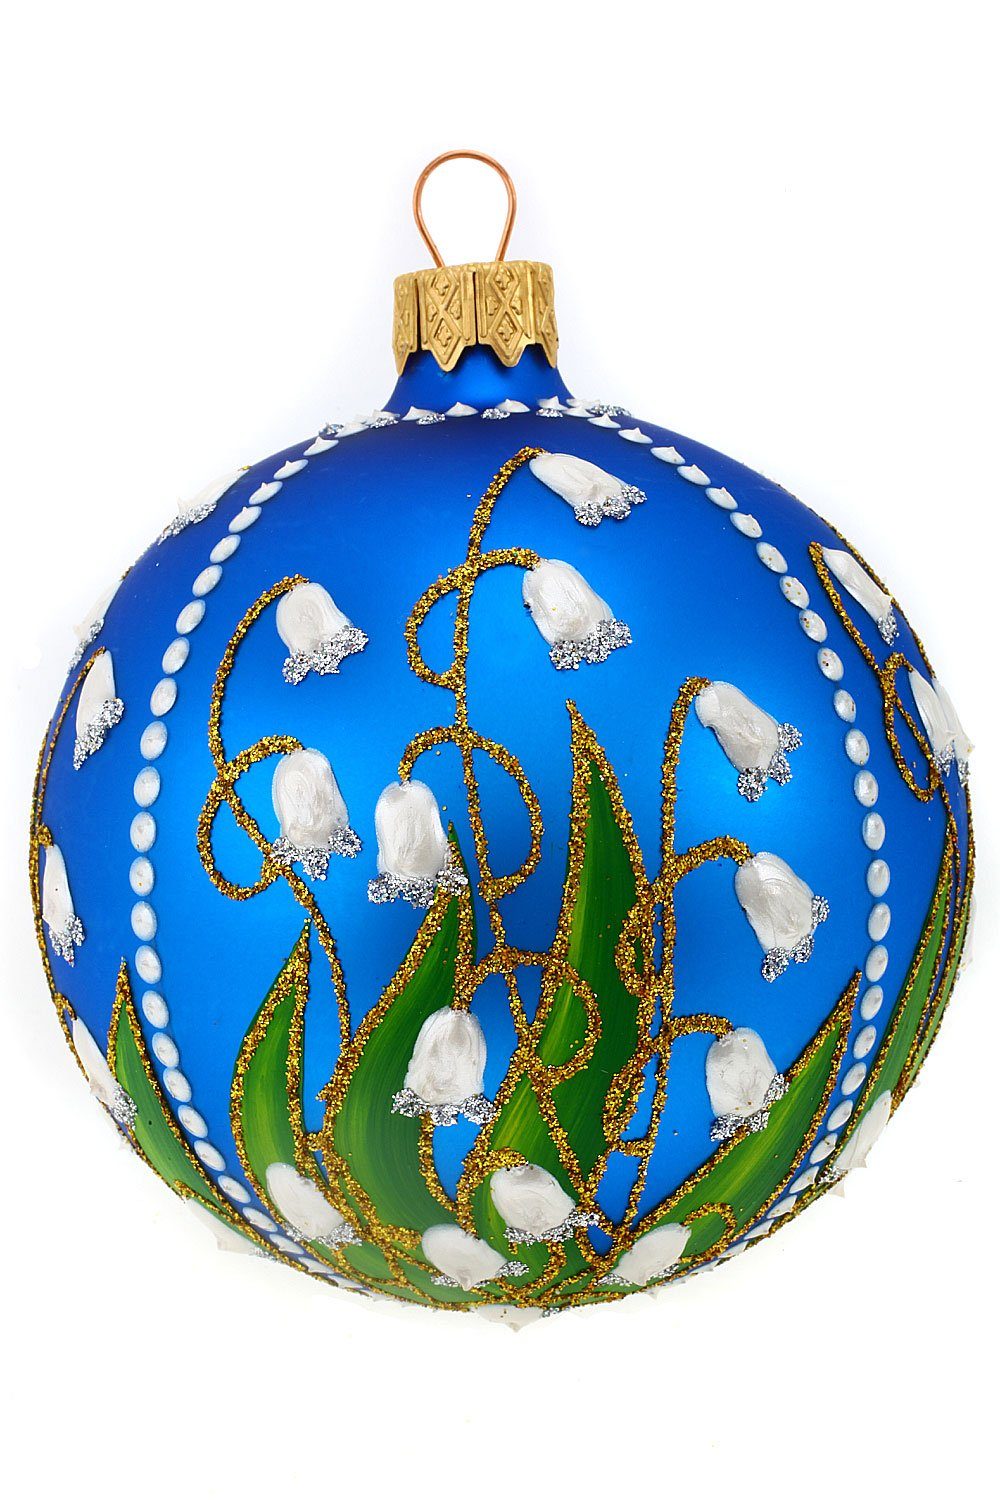 Hamburger Weihnachtskontor Weihnachtsbaumkugel Christbaumkugel mit Maiglöckchen blau, mundgeblasen - handdekoriert